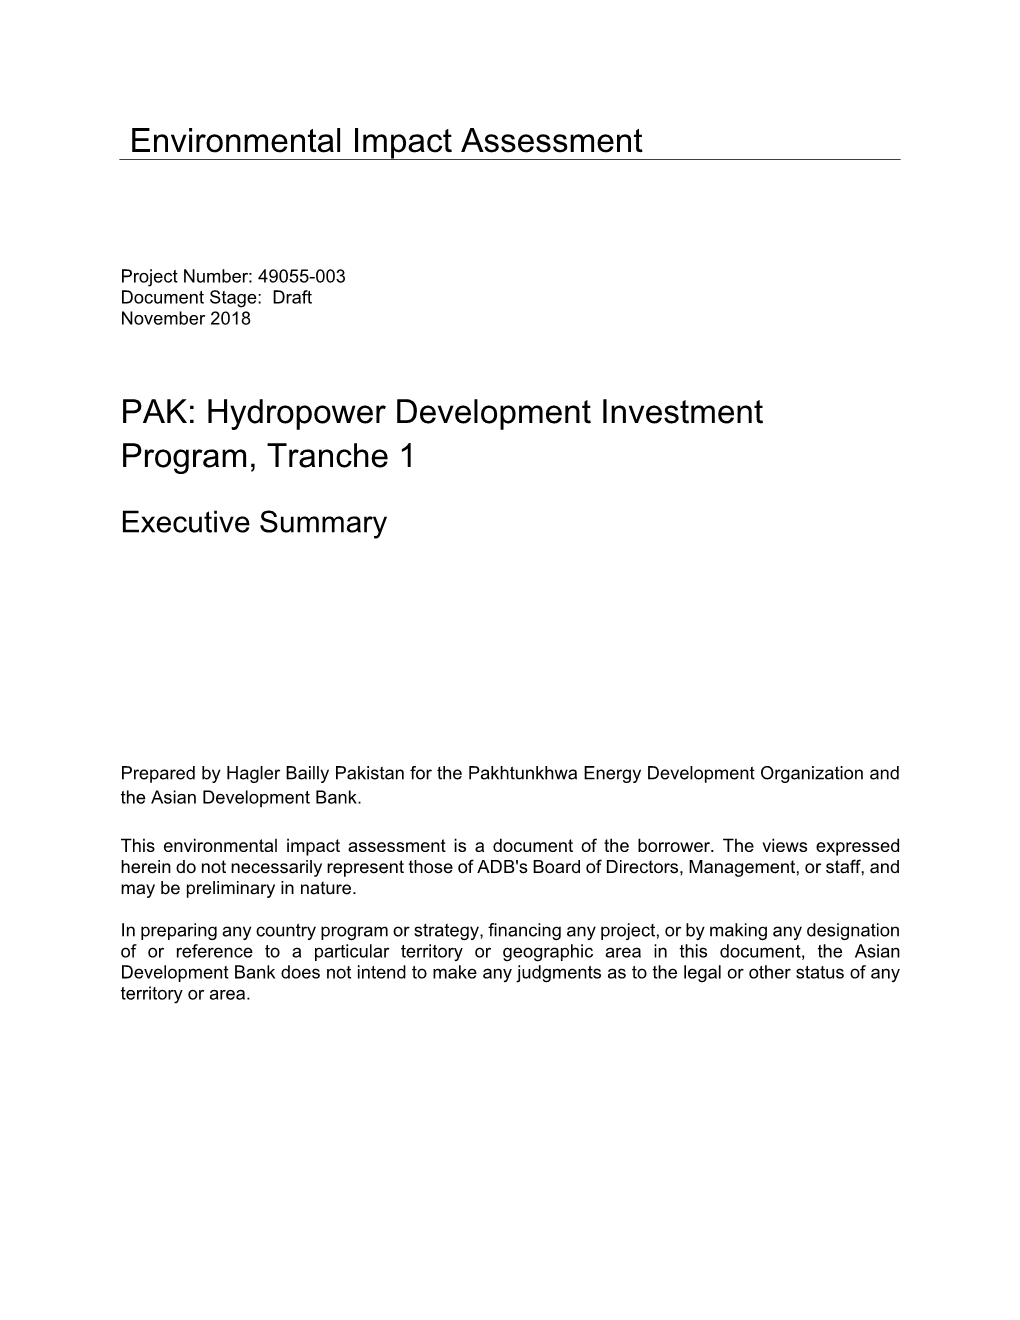 49055-003: Hydropower Development